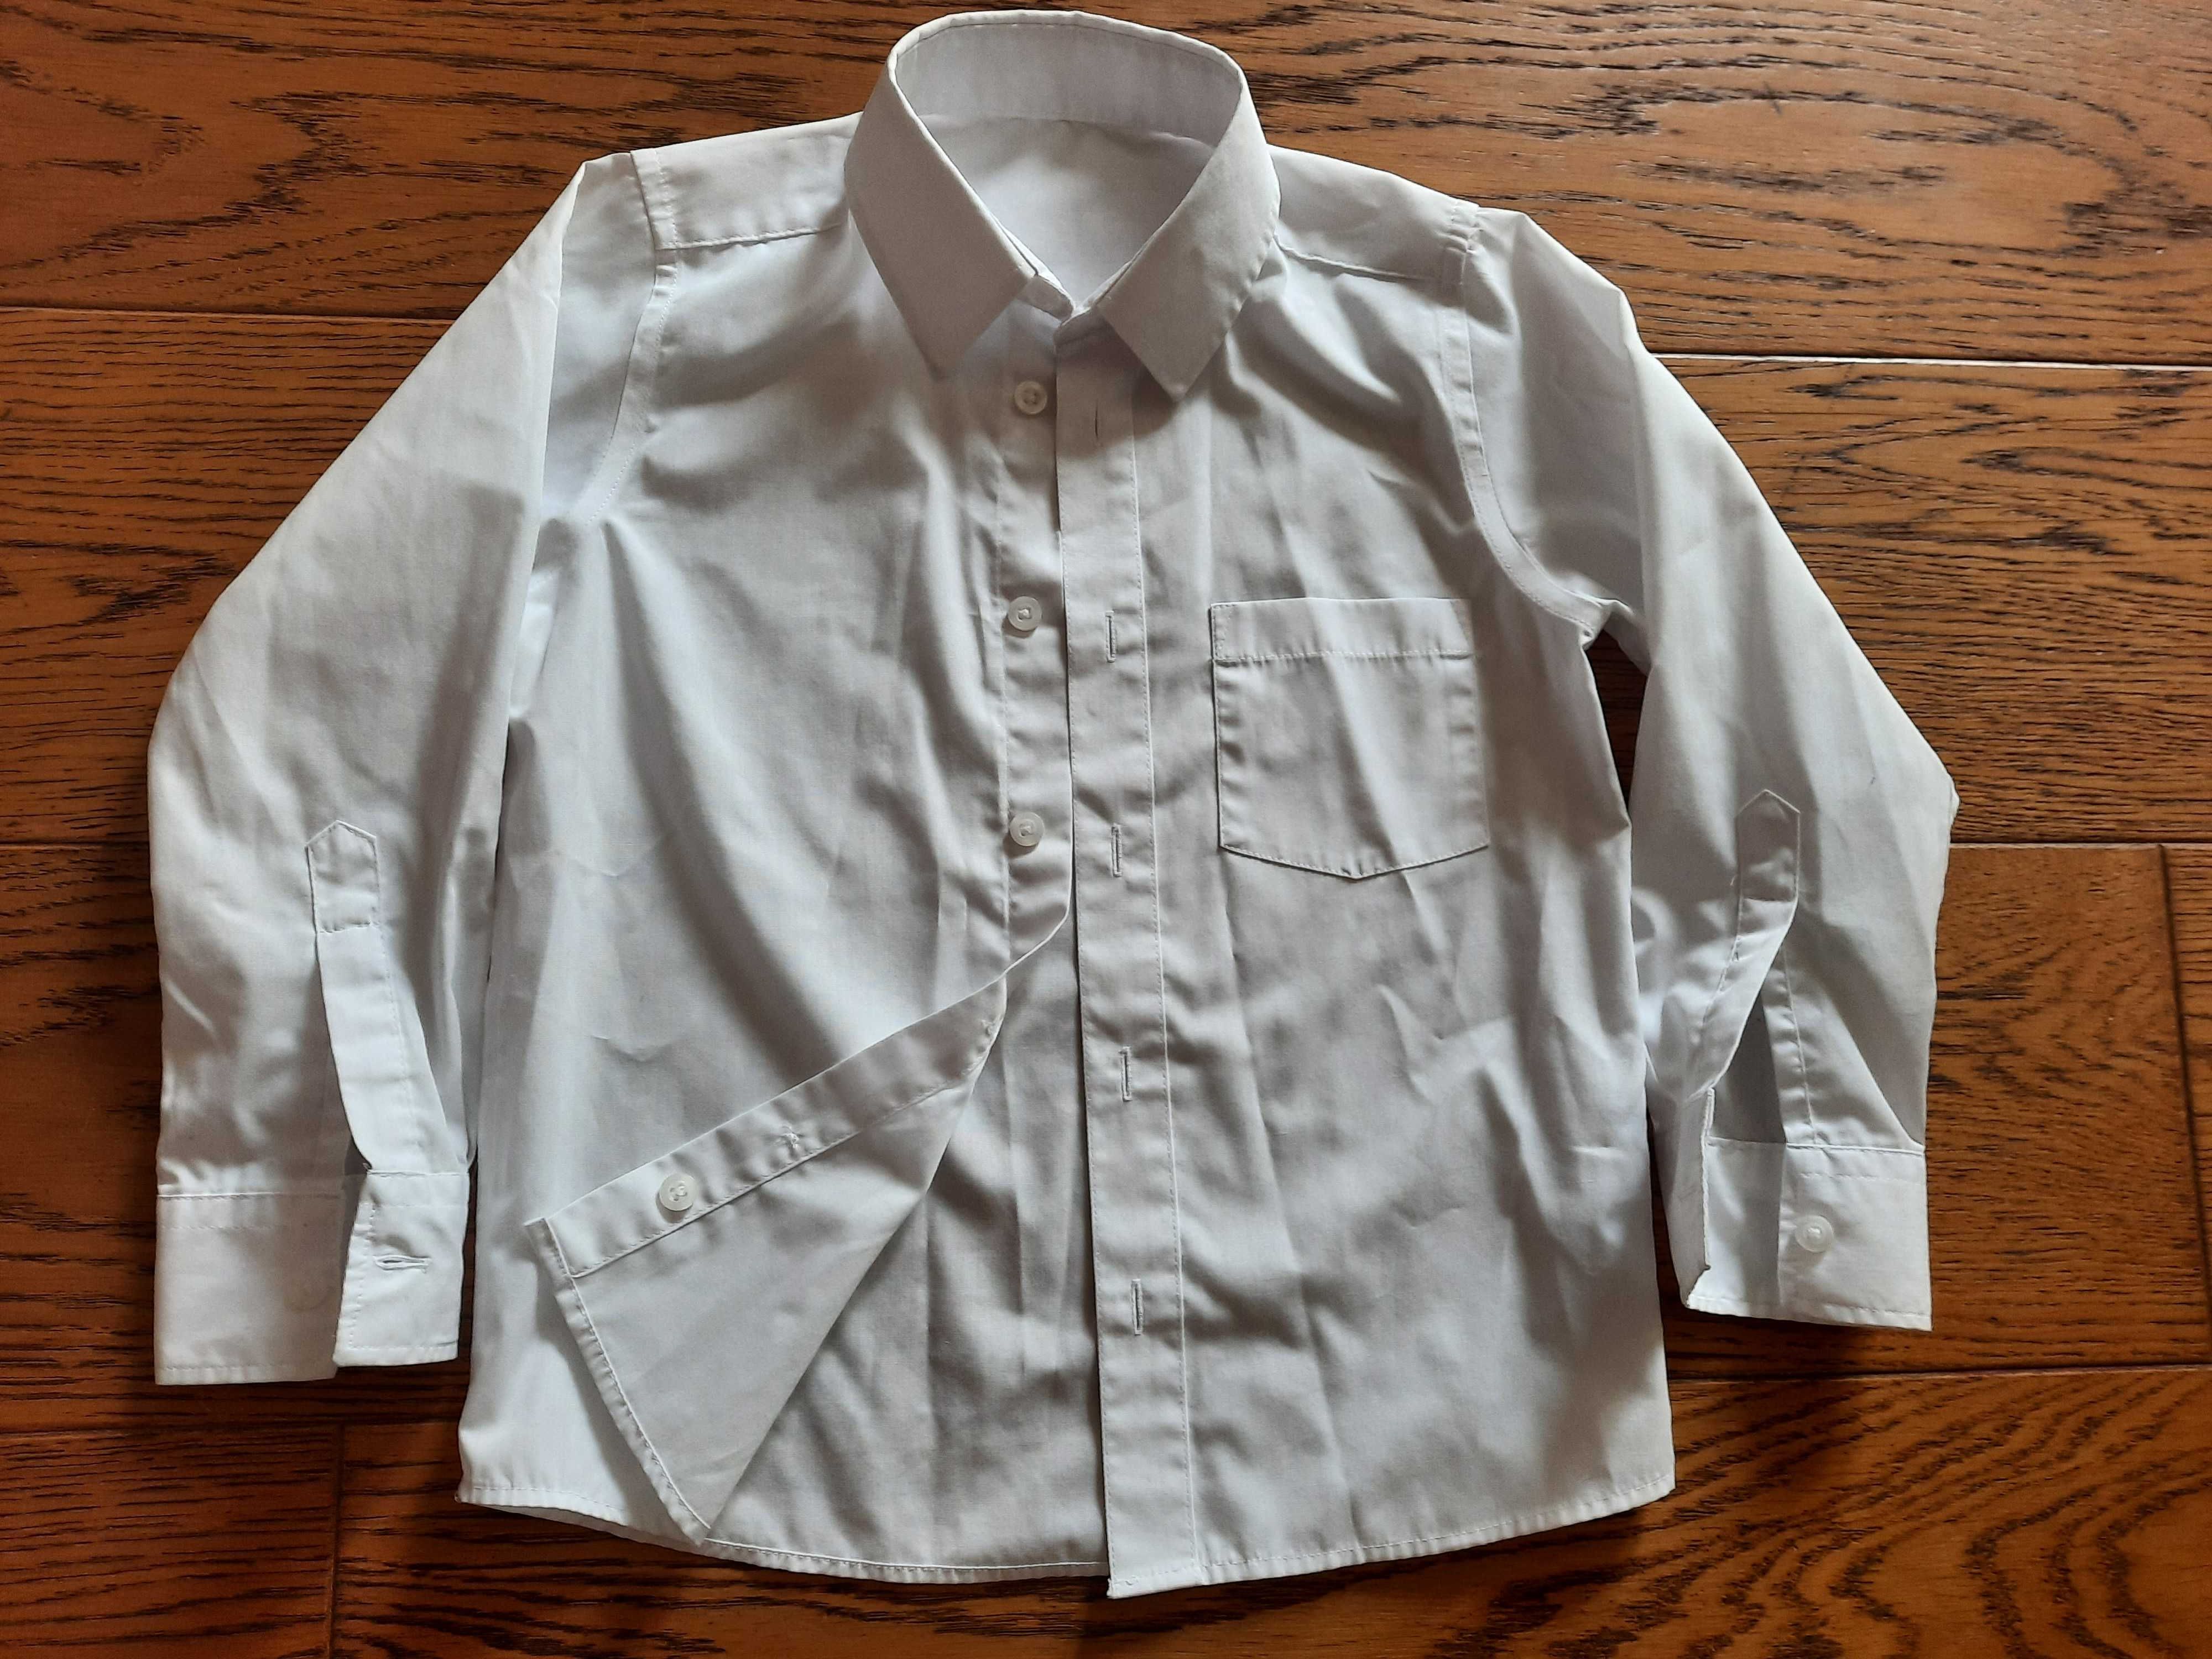 Biała koszula rozmiar 116